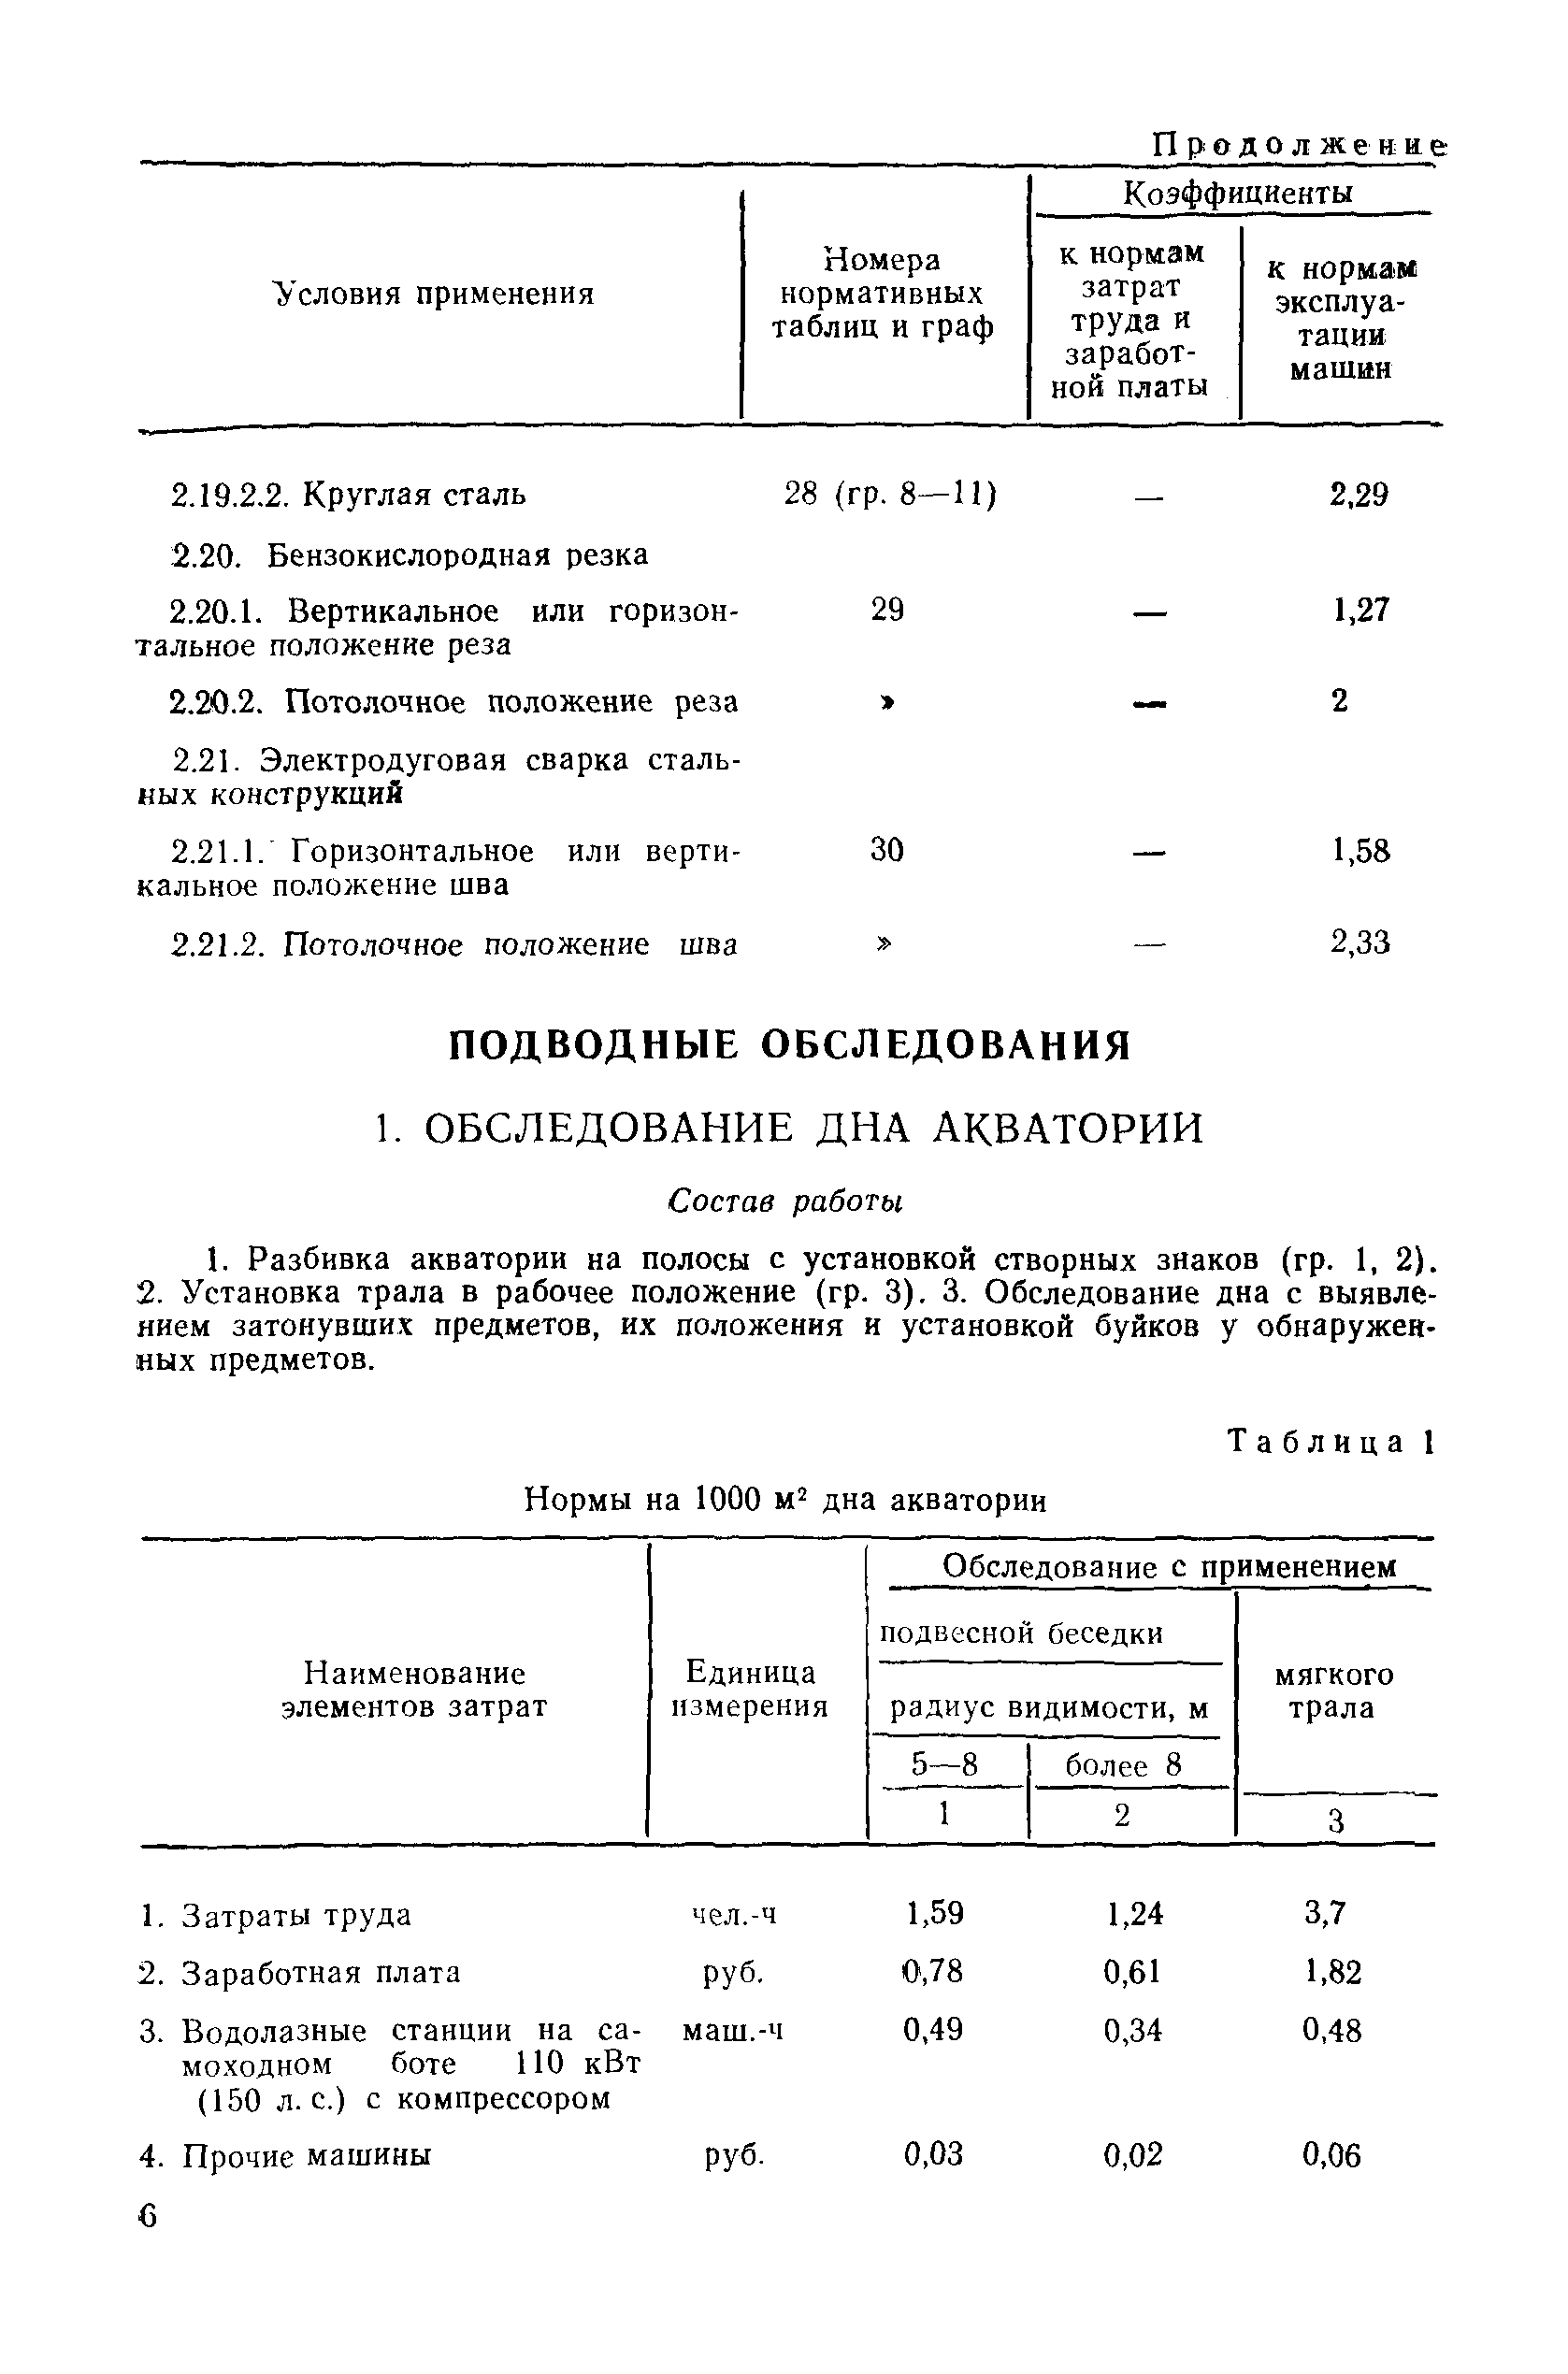 ВСН 7-83/ММФ